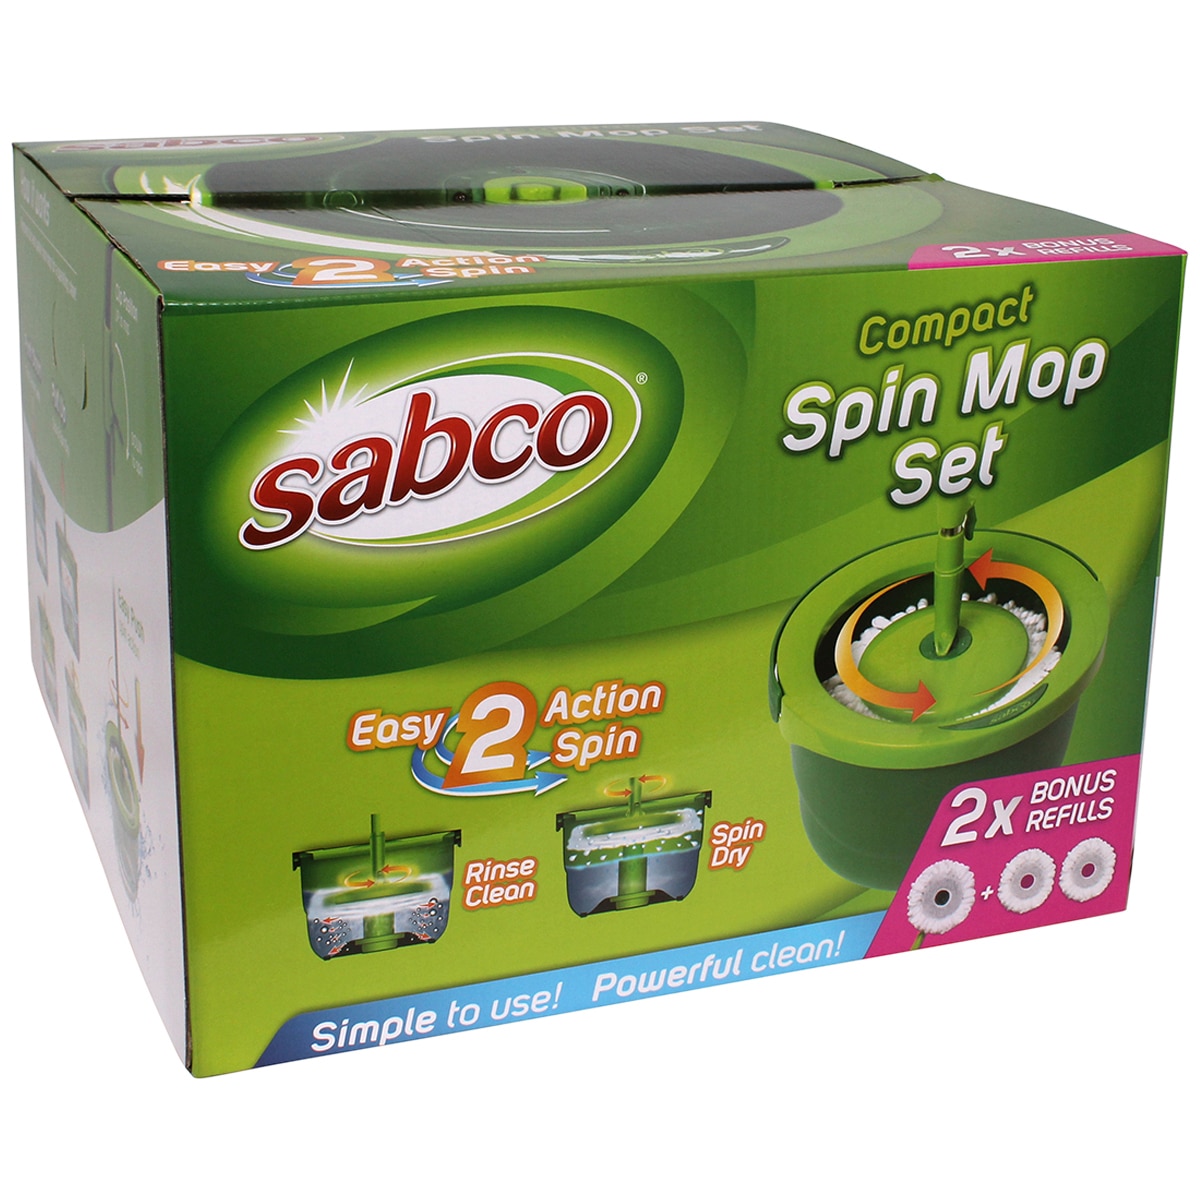 Sabco Compact Spin Mop Set 2 x Bonus Refills Costco Australia